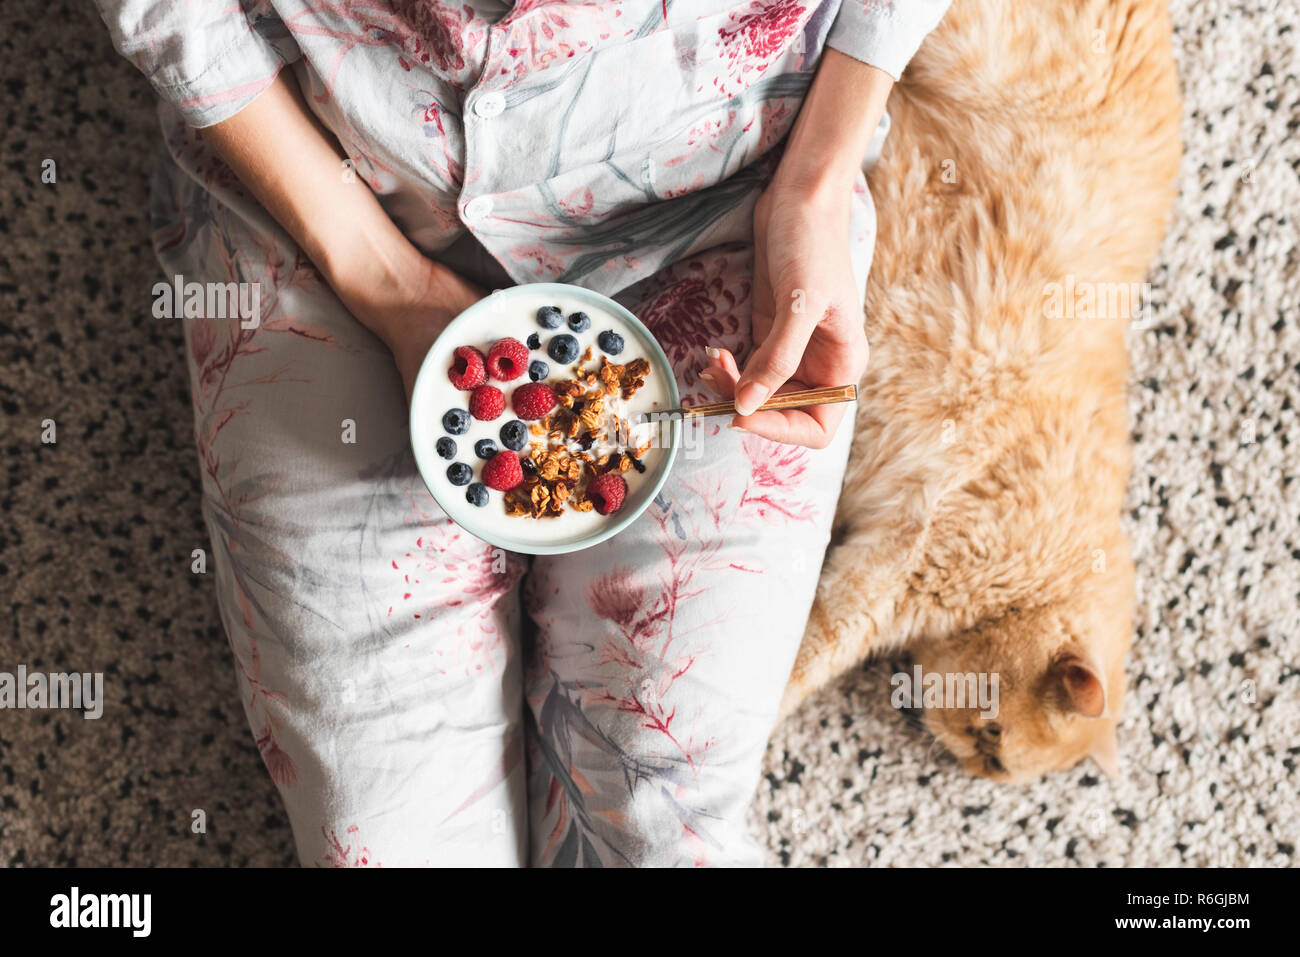 Girl eating healthy breakfast bowl with yogurt and berries. Vegetarian diet breakfat. Top view Stock Photo